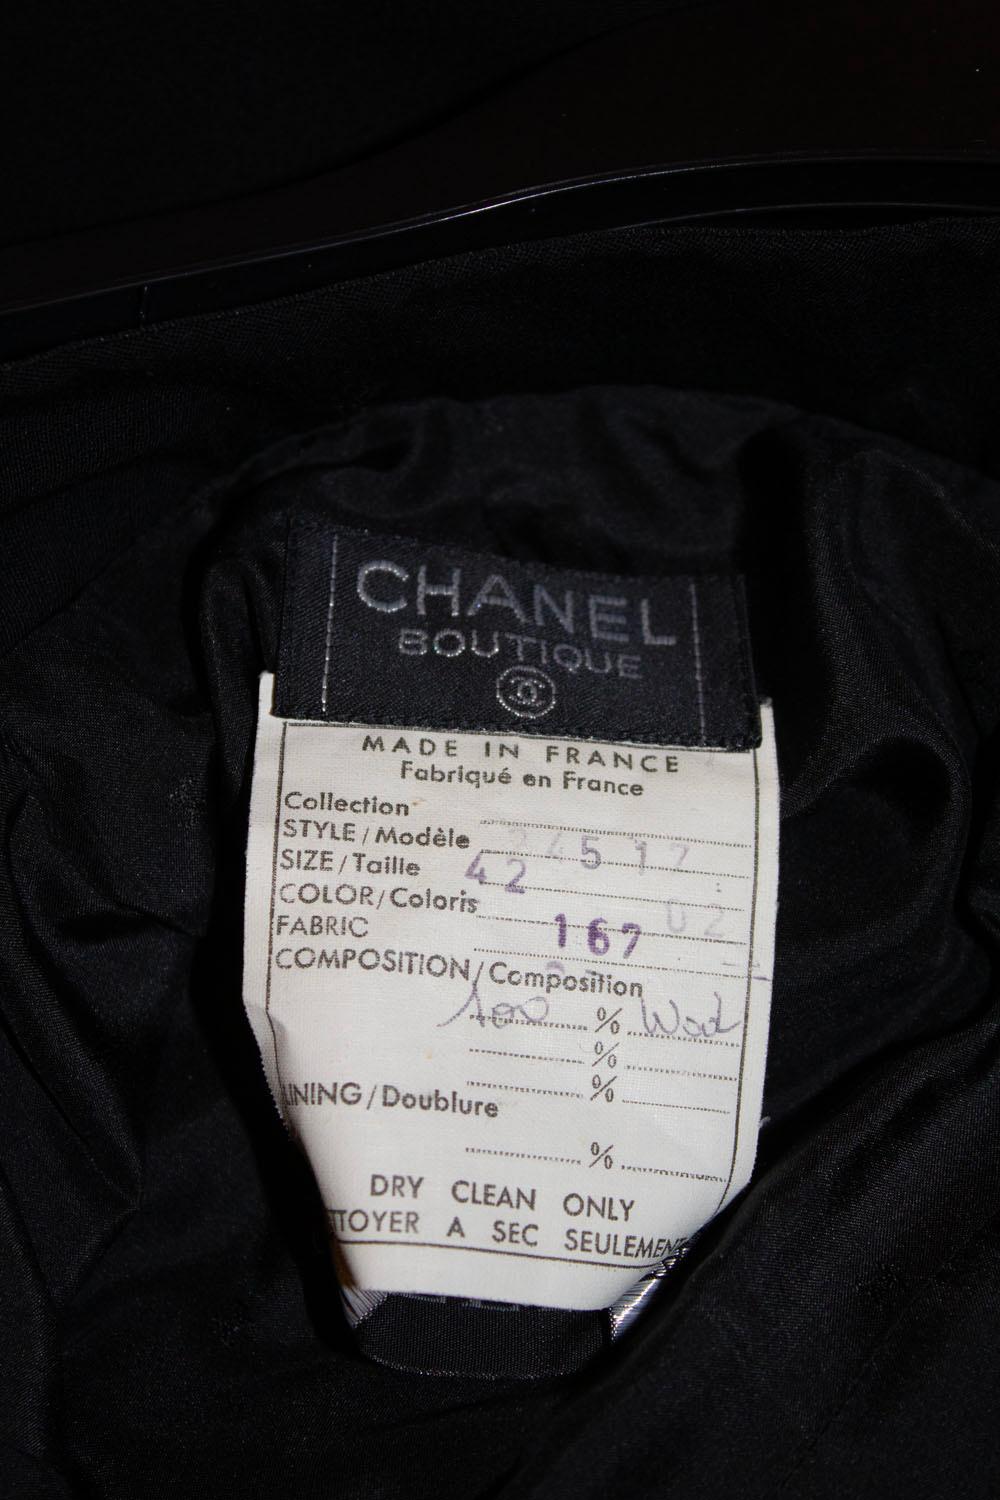 Ein atemberaubendes Paar Vintage Chanel Smoking-Stil Hosen.  Die Hose hat ein schwarzes Satinband, das an der Seite entlangläuft, einen Taillenverschluss mit zwei Knöpfen und einen Reißverschluss. Sie sind vollständig gefüttert.
Größe 42 , Maße: